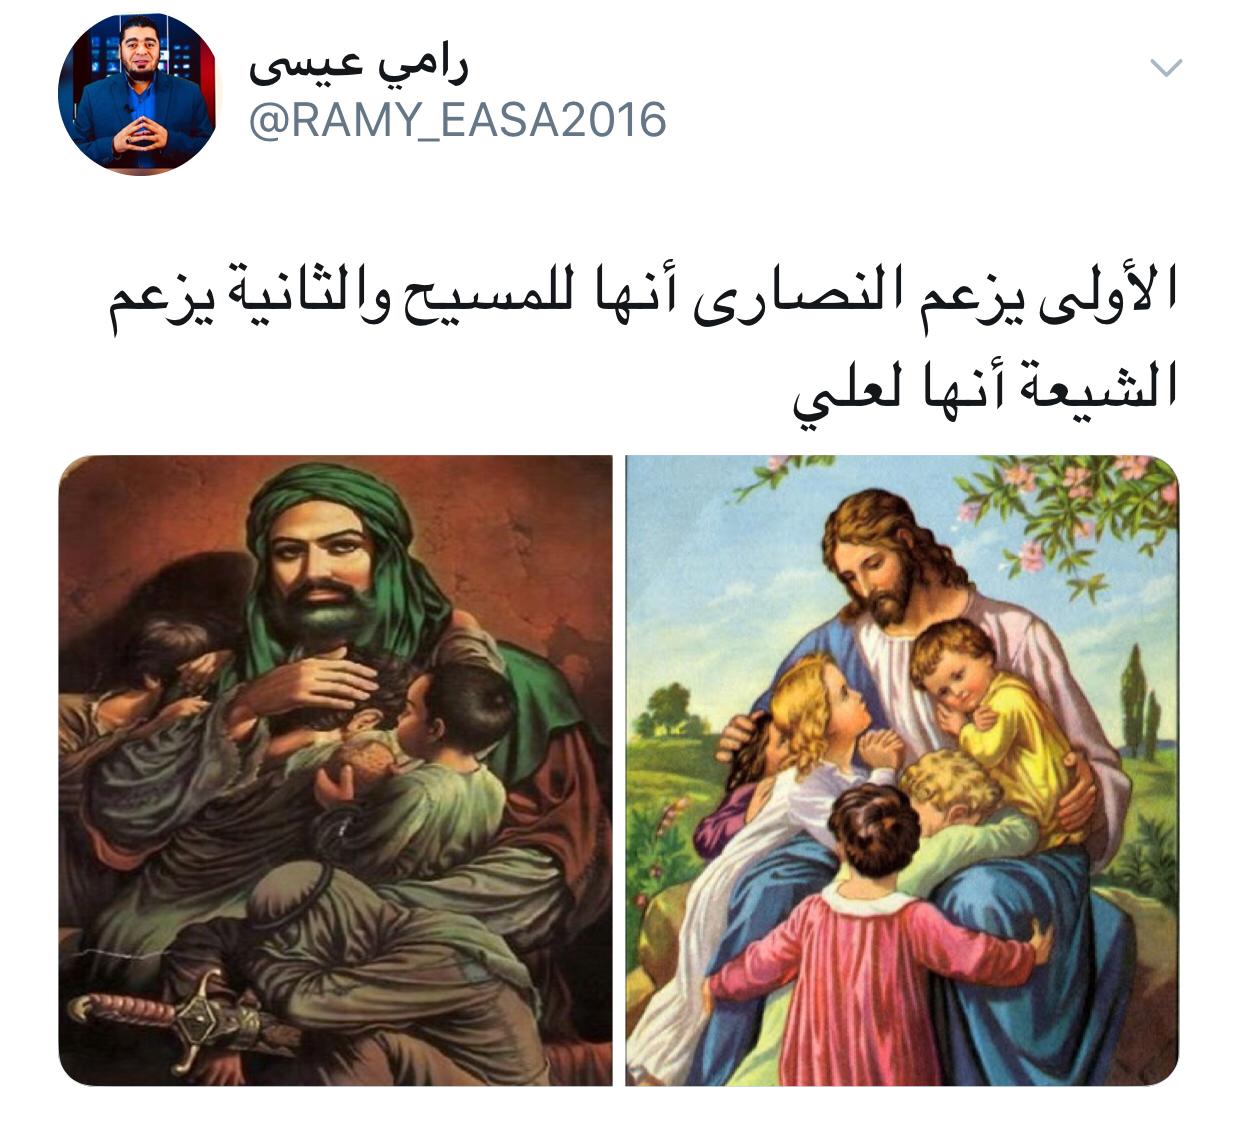 بالصور.. رامي عيسى يغرّد: ماالفرق بين الشيعة وبين النصاري؟!